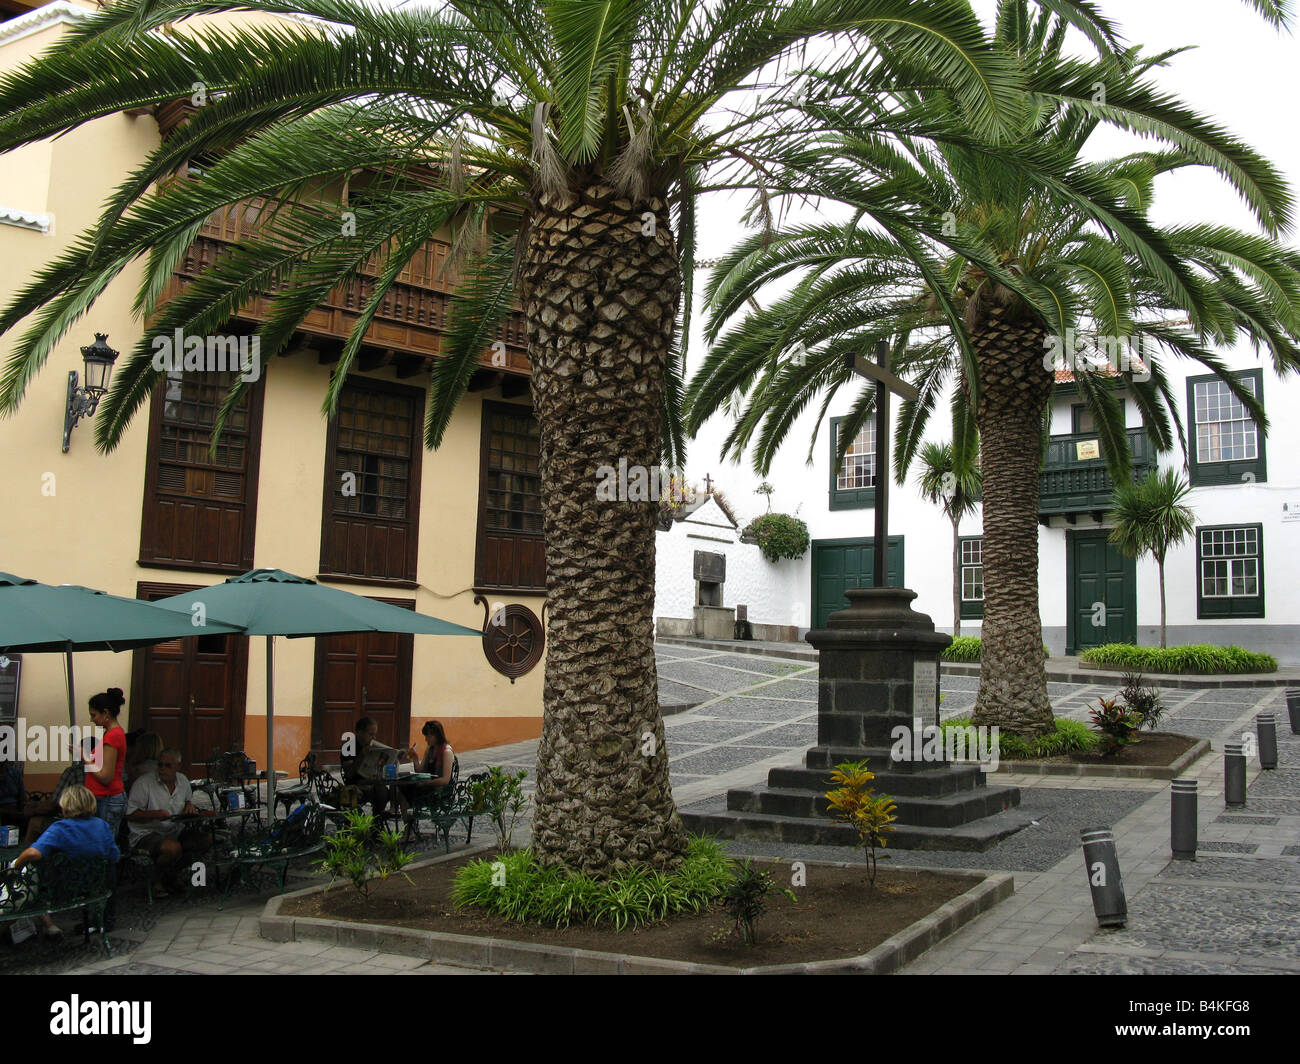 Cruz de Tercero, Plaza de la Alameda, Santa Cruz de La Palma, La Palma, Canary Islands, Islas Canarias, Spain, España, Europe Stock Photo